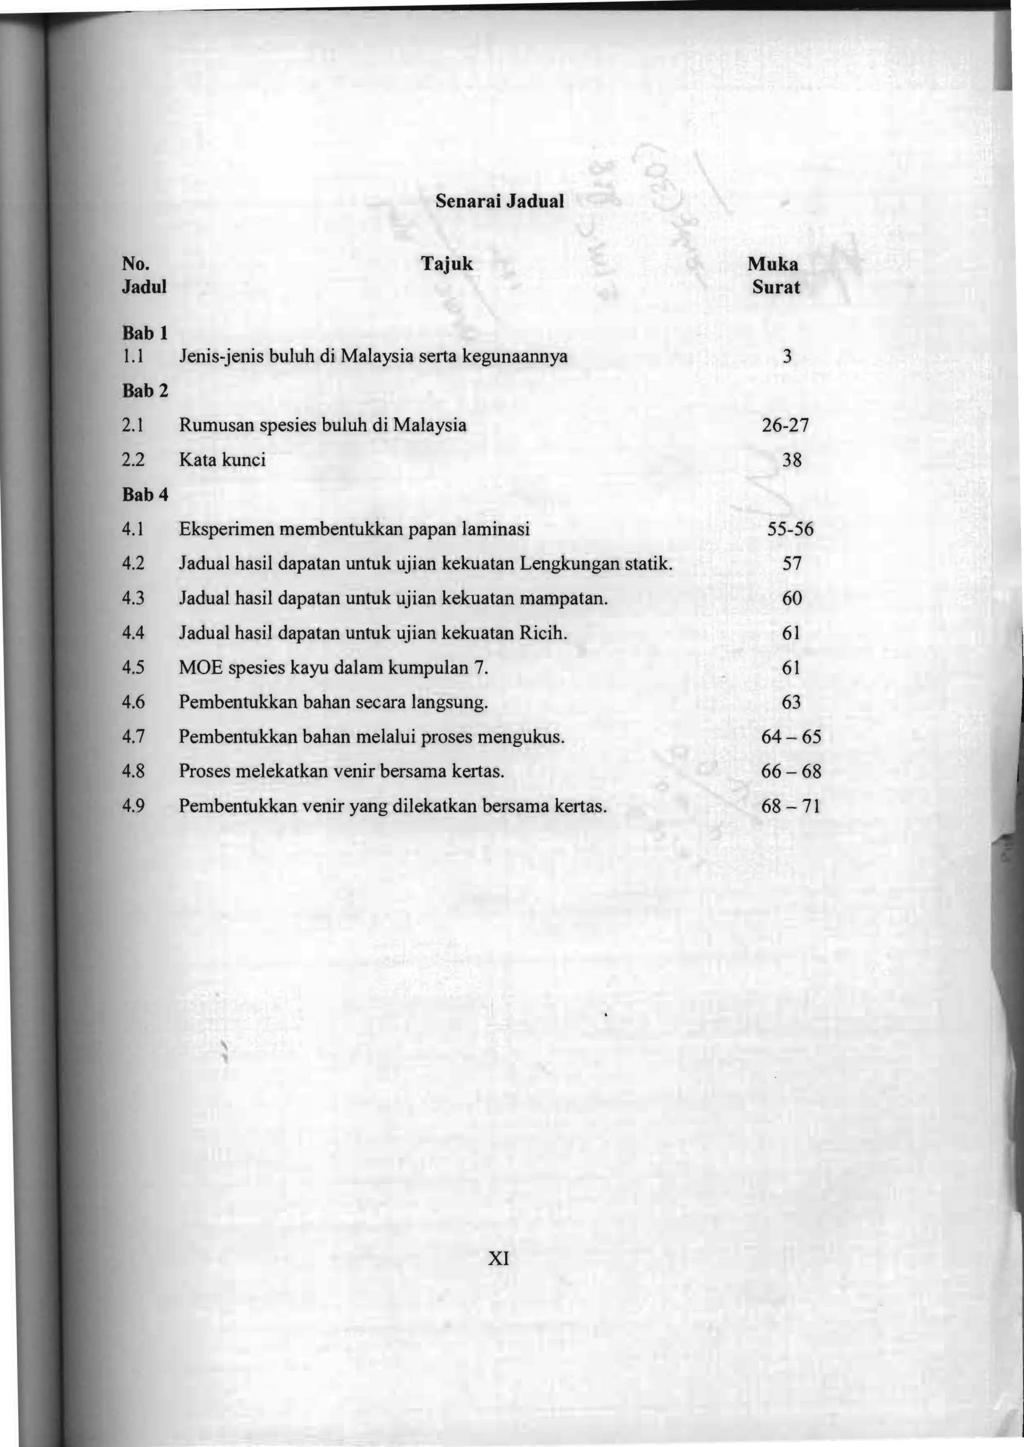 Senarai Jadual No. Tajuk Muka Jadul Surat Bab 1 1.1 lenis-jenis buluh di Malaysia serta kegunaannya 3 Dab 2 2.1 Rumusan spesies buluh di Malaysia 26-27 2.2 Kata kunci 38 Dab 4 4.